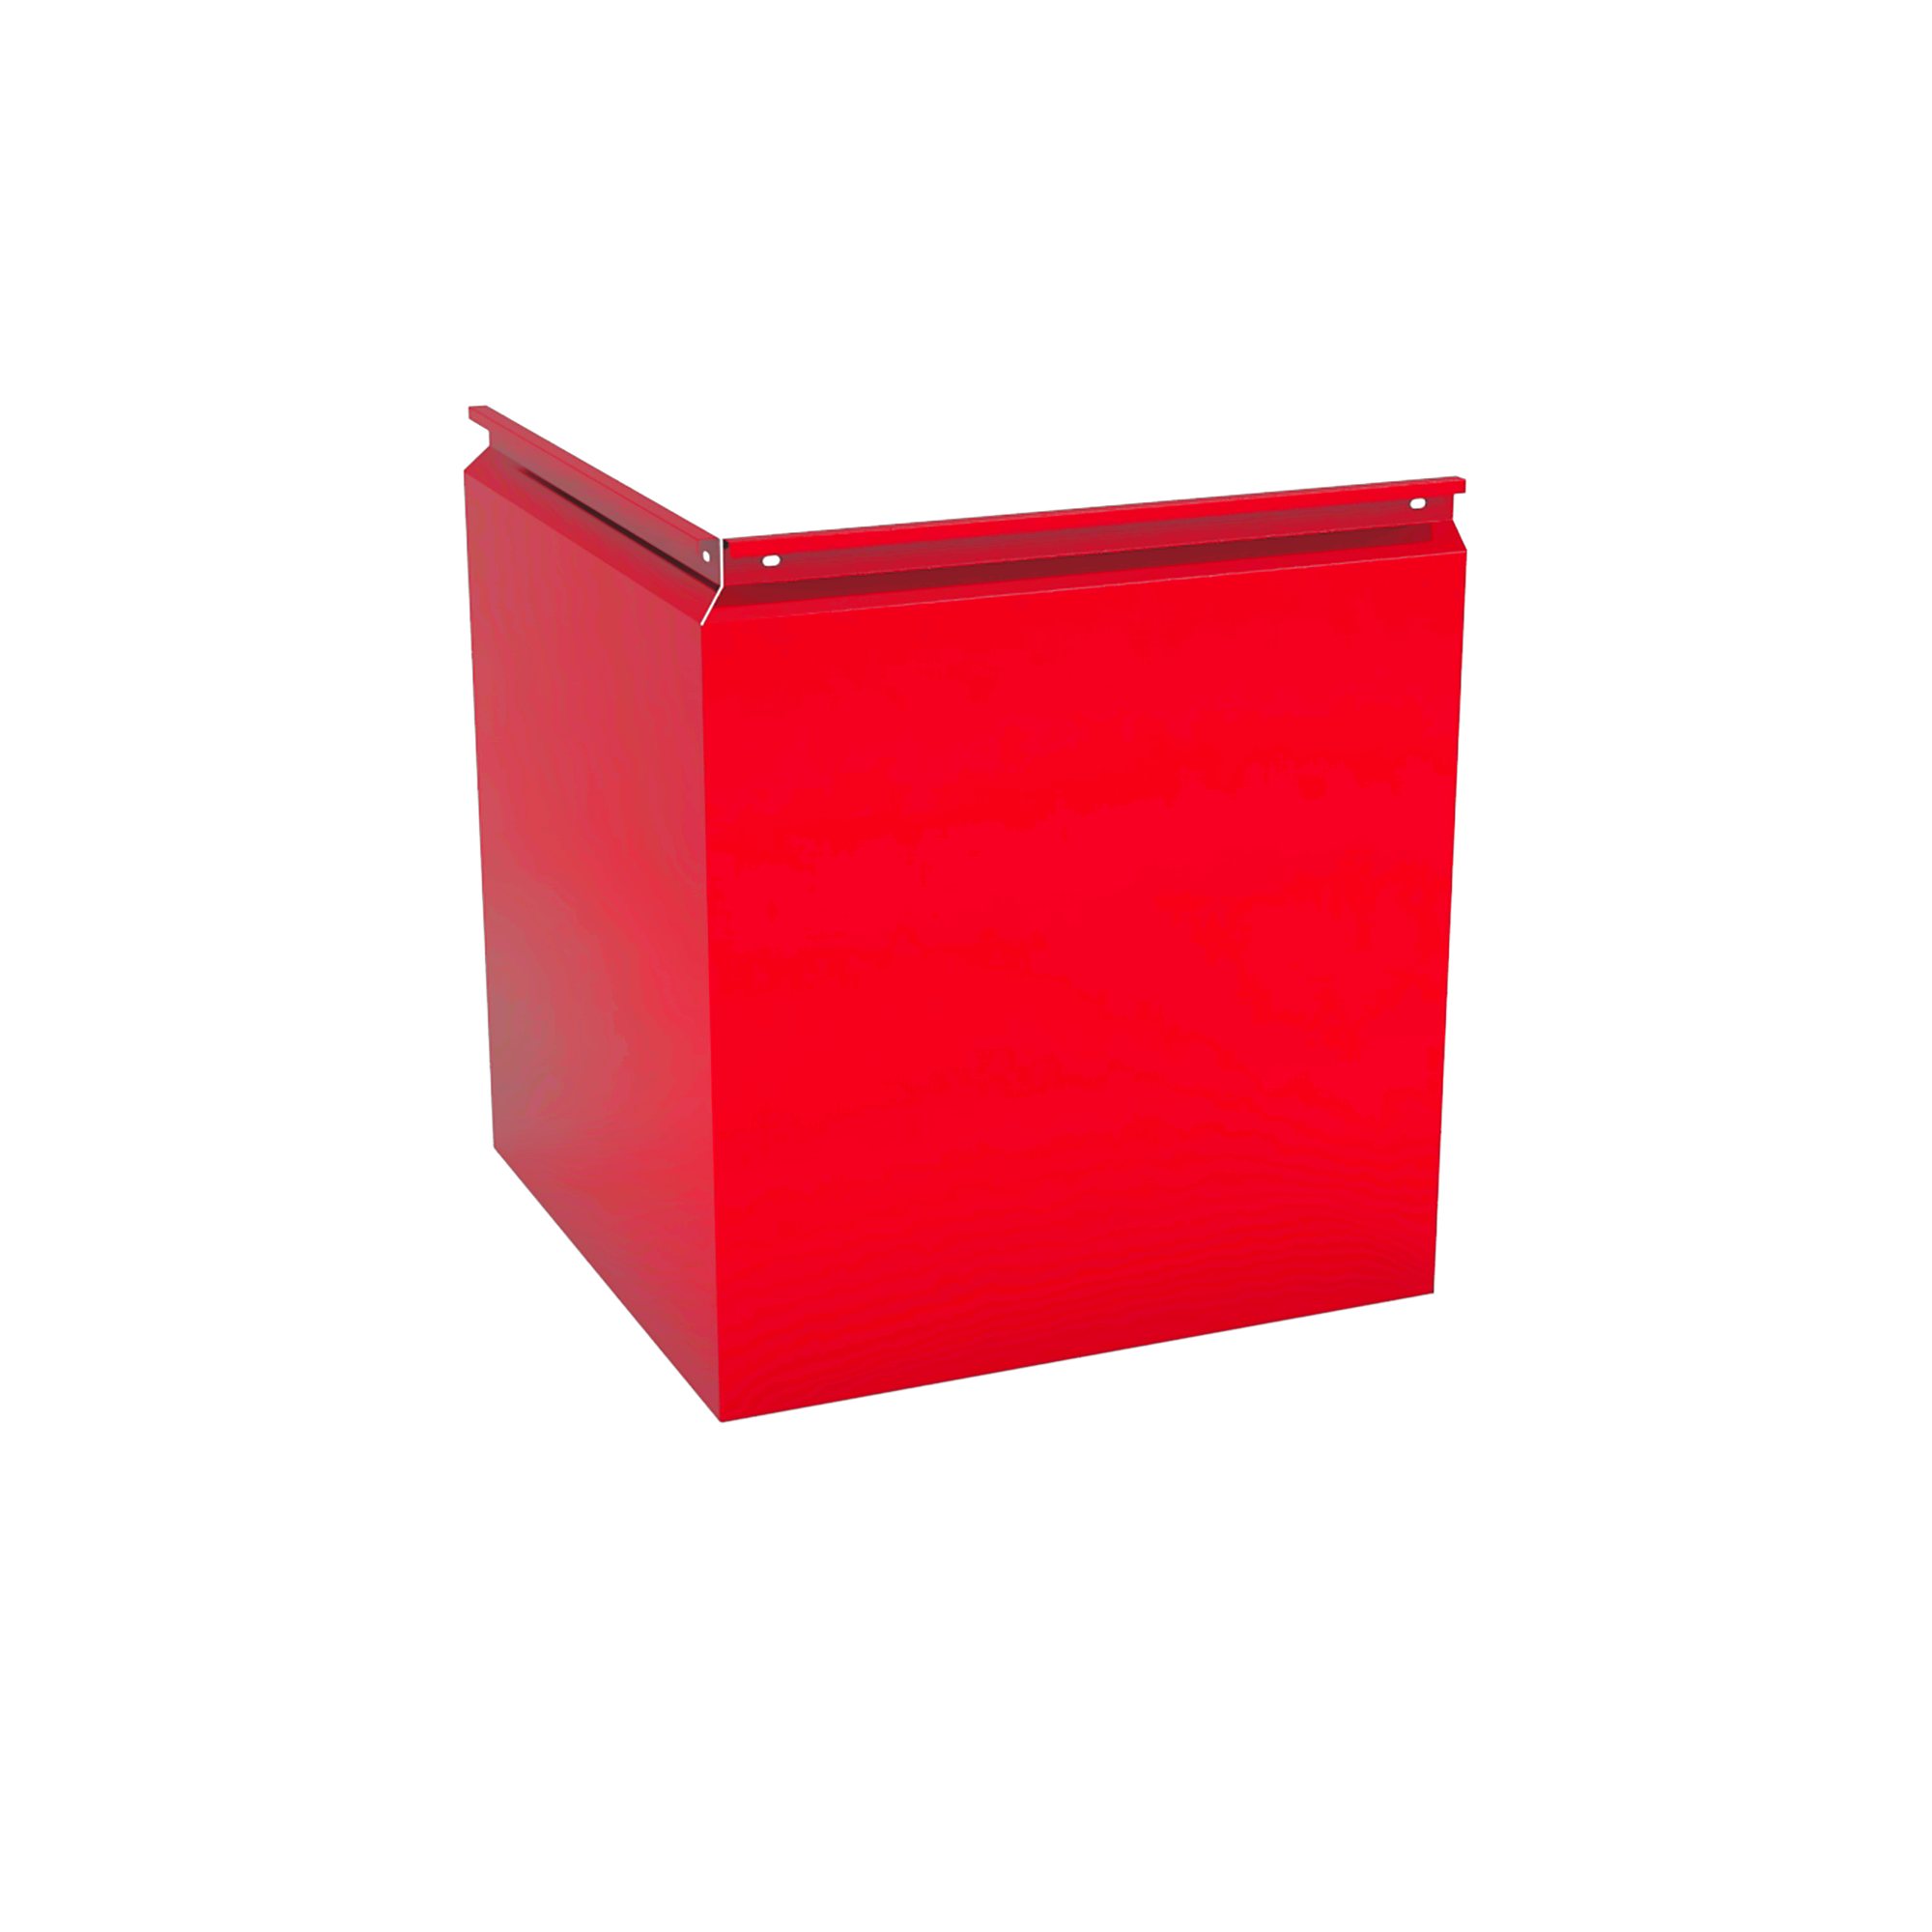 Фасадная кассета Угловая 1025 Транспортный красный 1,2 мм Фасадные кассеты Кровля Сервис